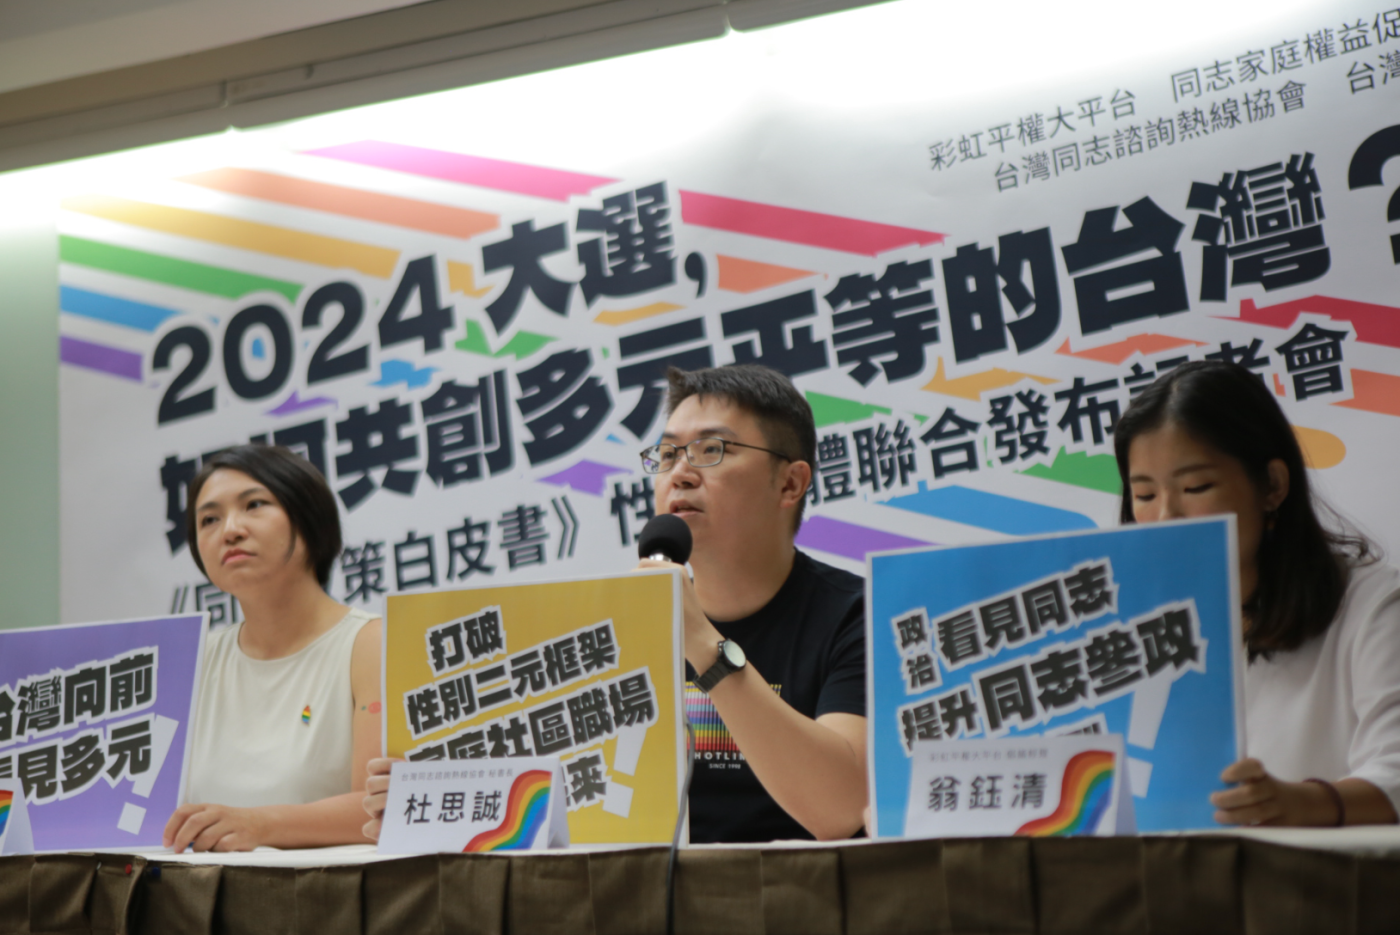 彩虹平權大平台、同志家庭權益促進會、同志諮詢熱線、性別平等教育協會今共同推出《2023台灣同志政策白皮書》。彩虹平權大平台提供